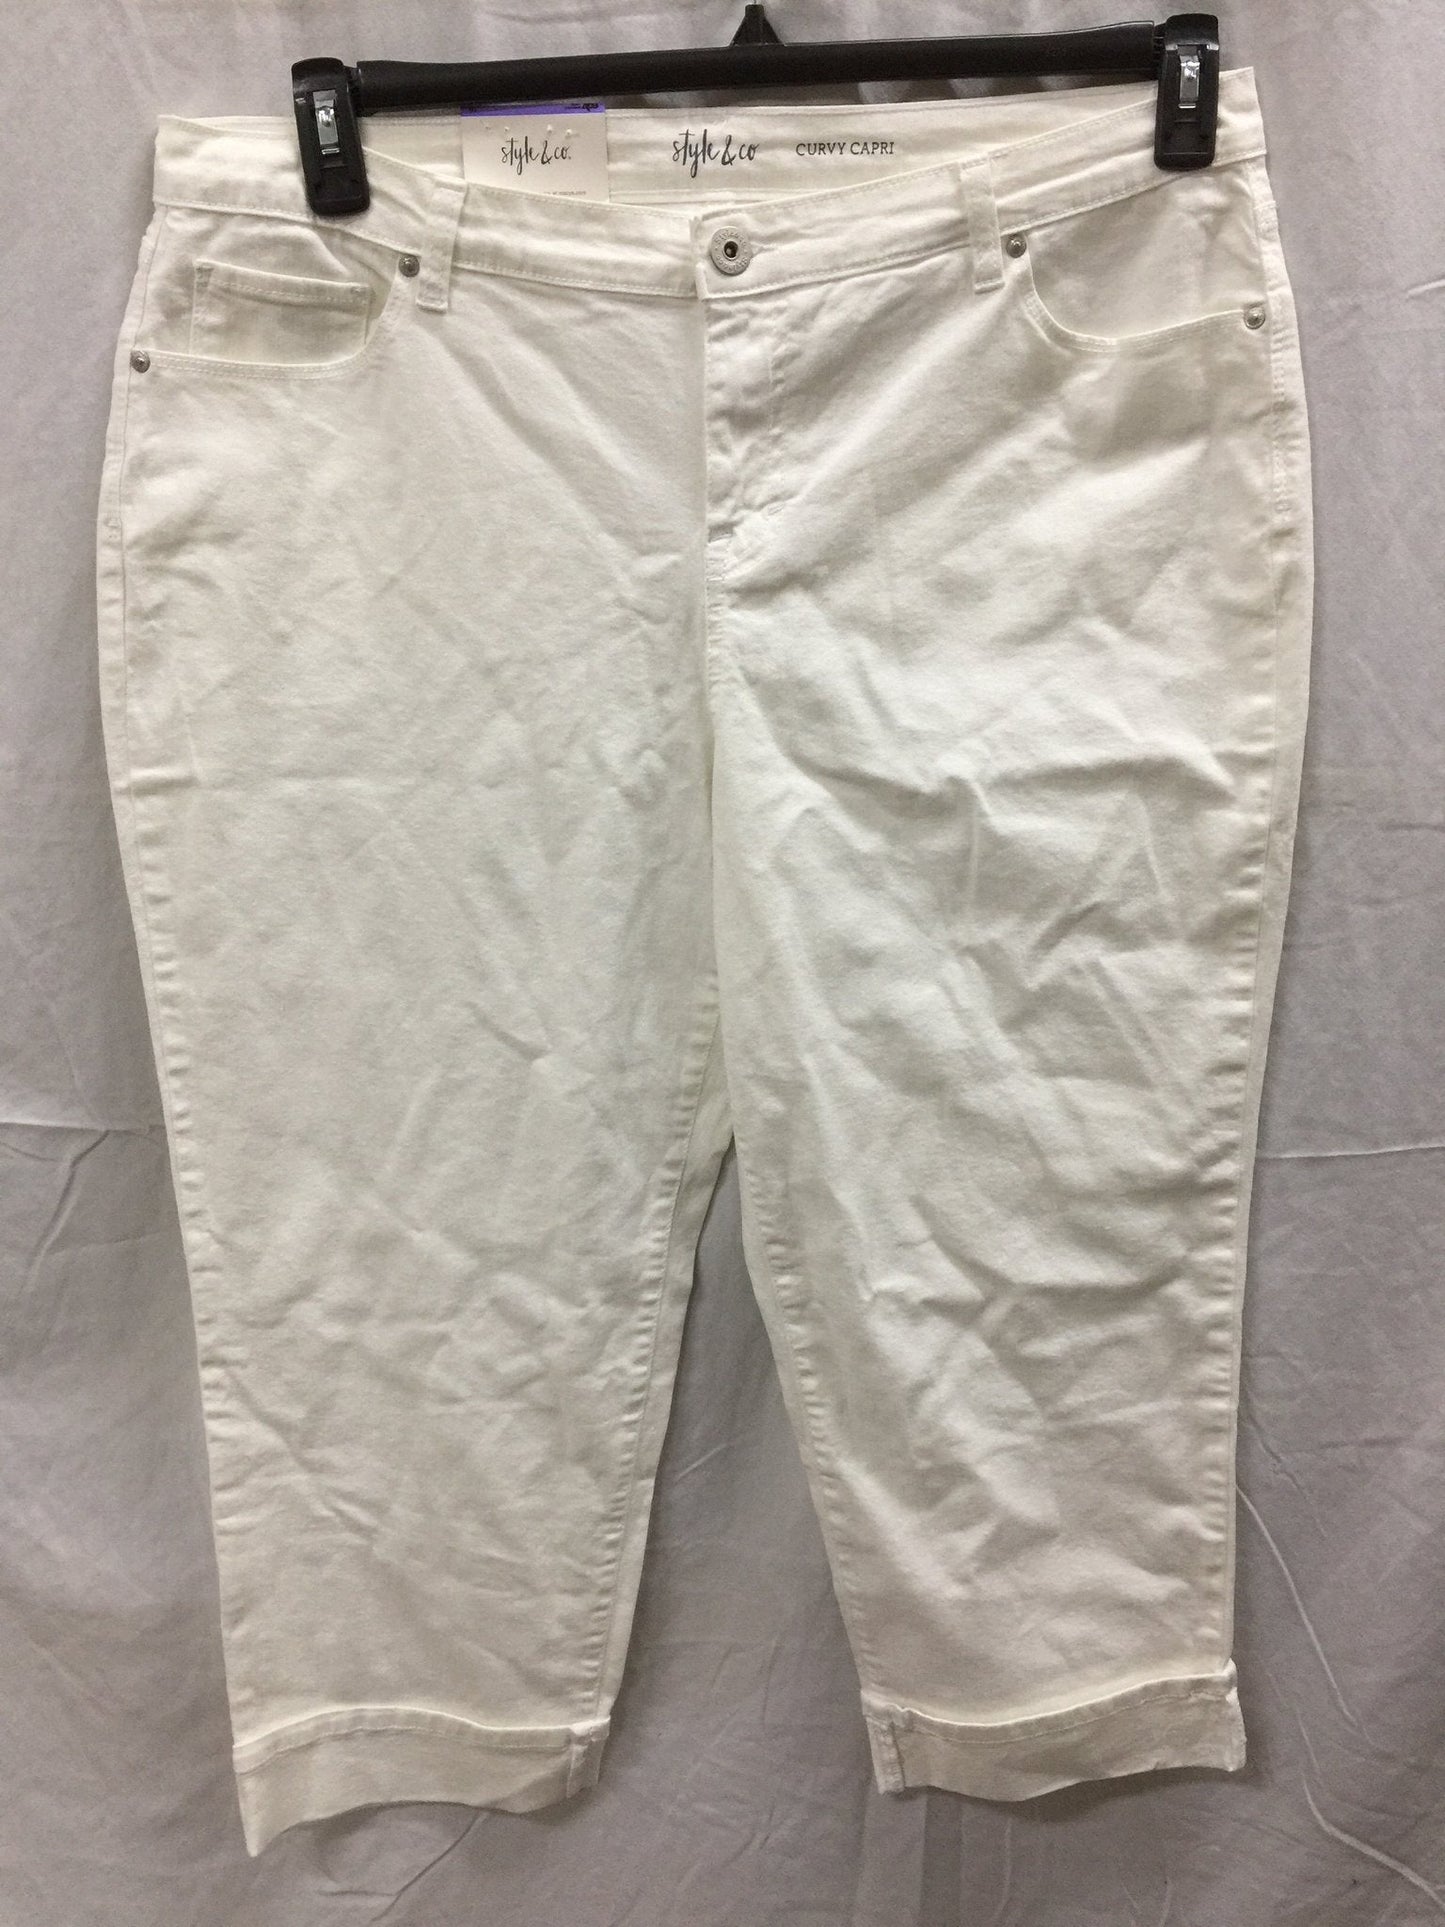 Style Co Curvy Capri Jeans Bright White 18